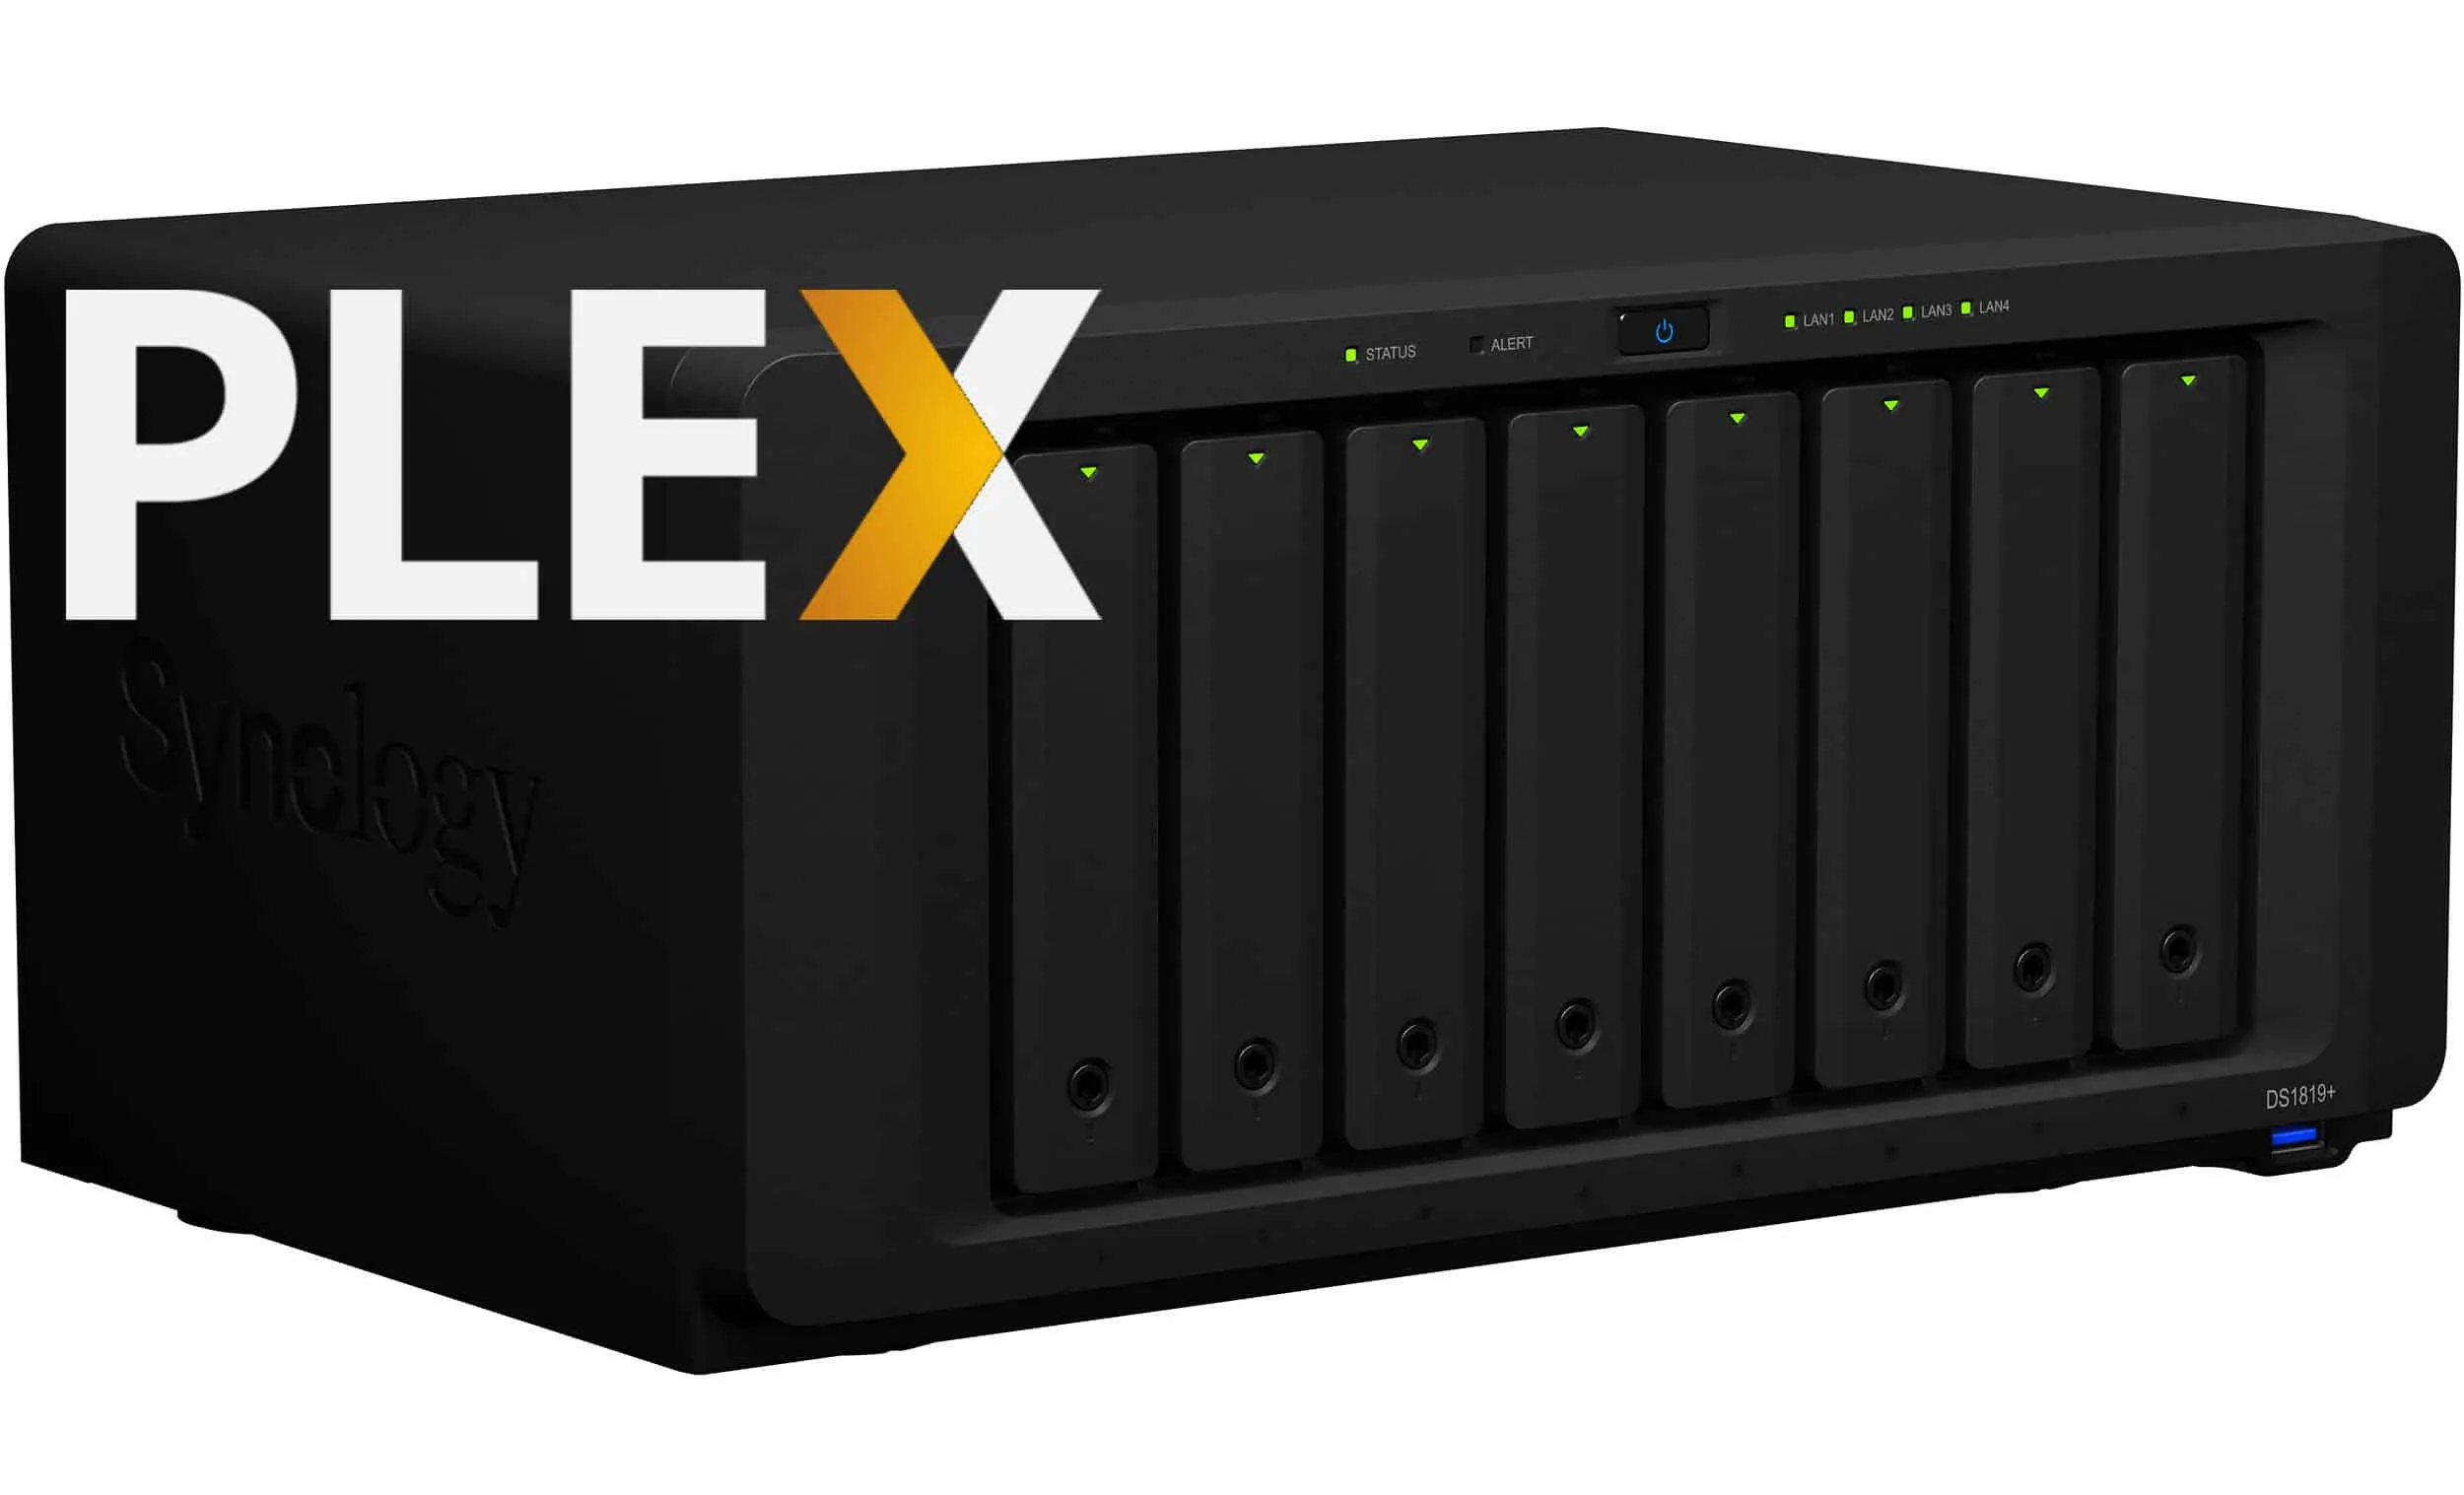 Onze onderneming Om toestemming te geven hurken 8 Best NAS with Plex Server Support [2022] - 4k, Transcoding, etc. | SHB